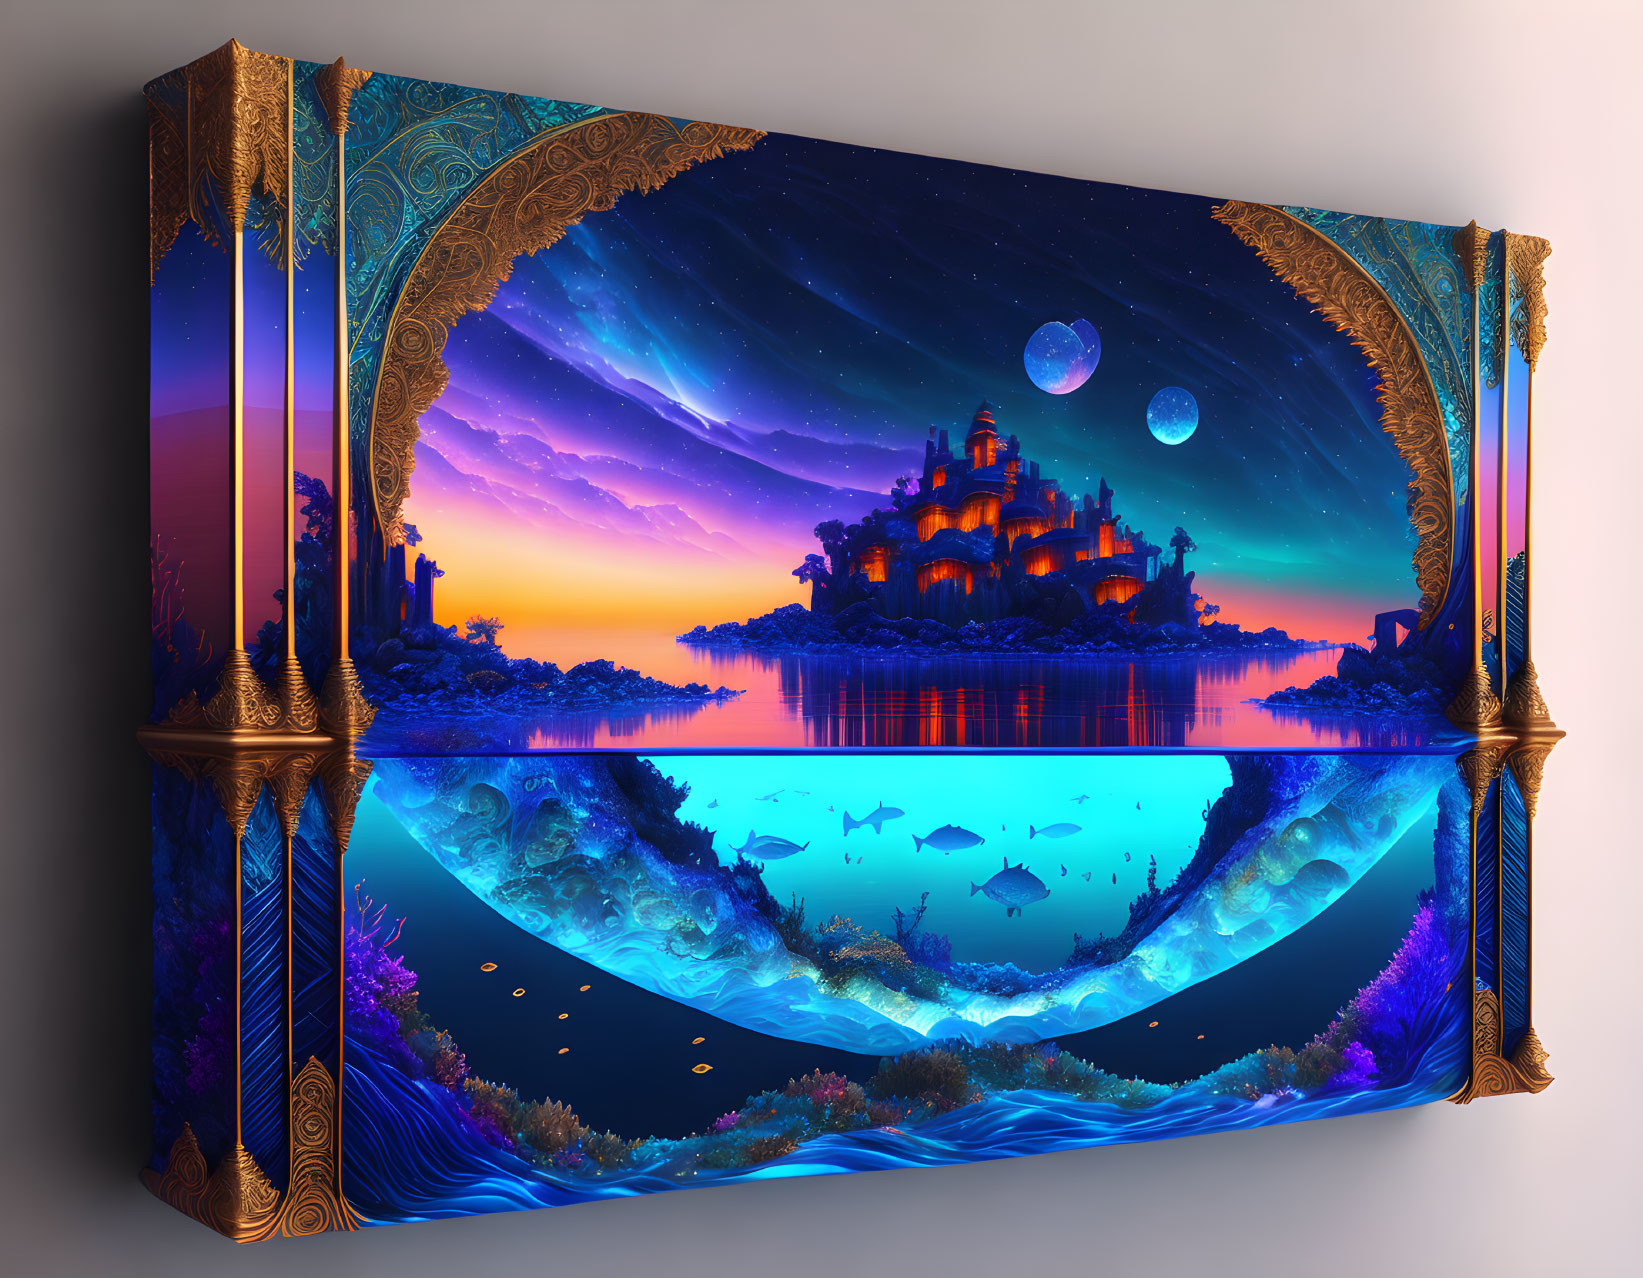 Surreal 3D Artwork: Fantasy Landscape with Castle, Sunset Skies, Ocean